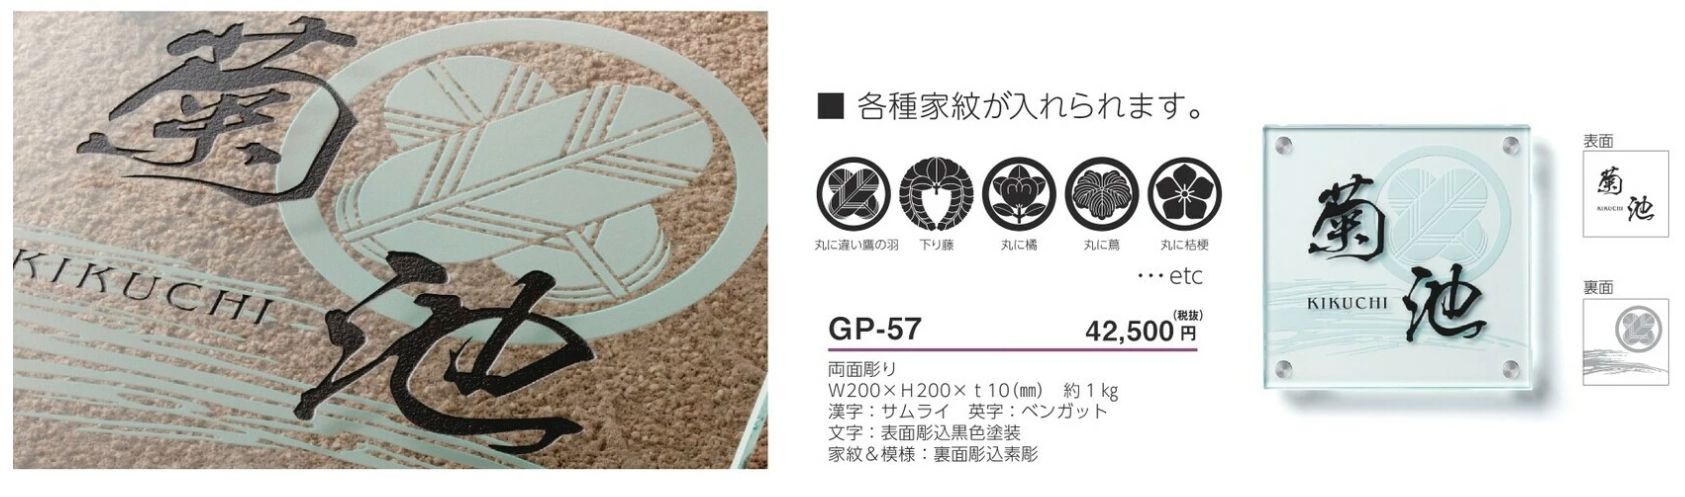 美濃クラフト GP-57 フラットガラス表札の販売